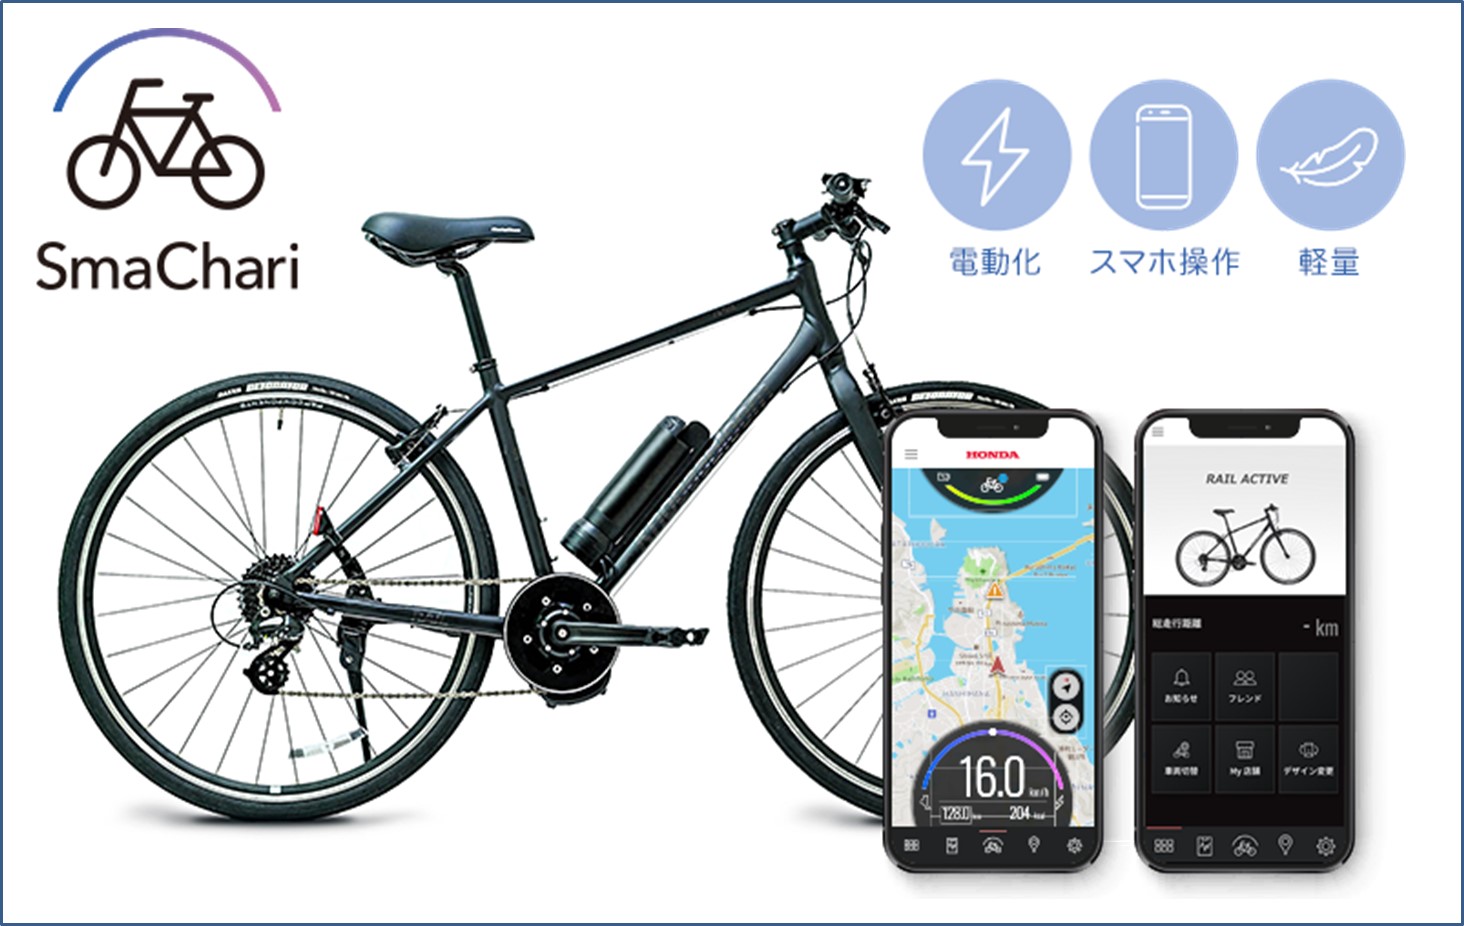 「2023年度グッドデザイン・ベスト100」受賞 Honda「SmaChari®」システムを搭載した世界初の電動アシスト自転車「RAIL ACTIVE-e」11月10日（金）発売開始～11月３日（金）「ワイズロード スポーツバイクデモ2023秋 in東京」での試乗も実施～